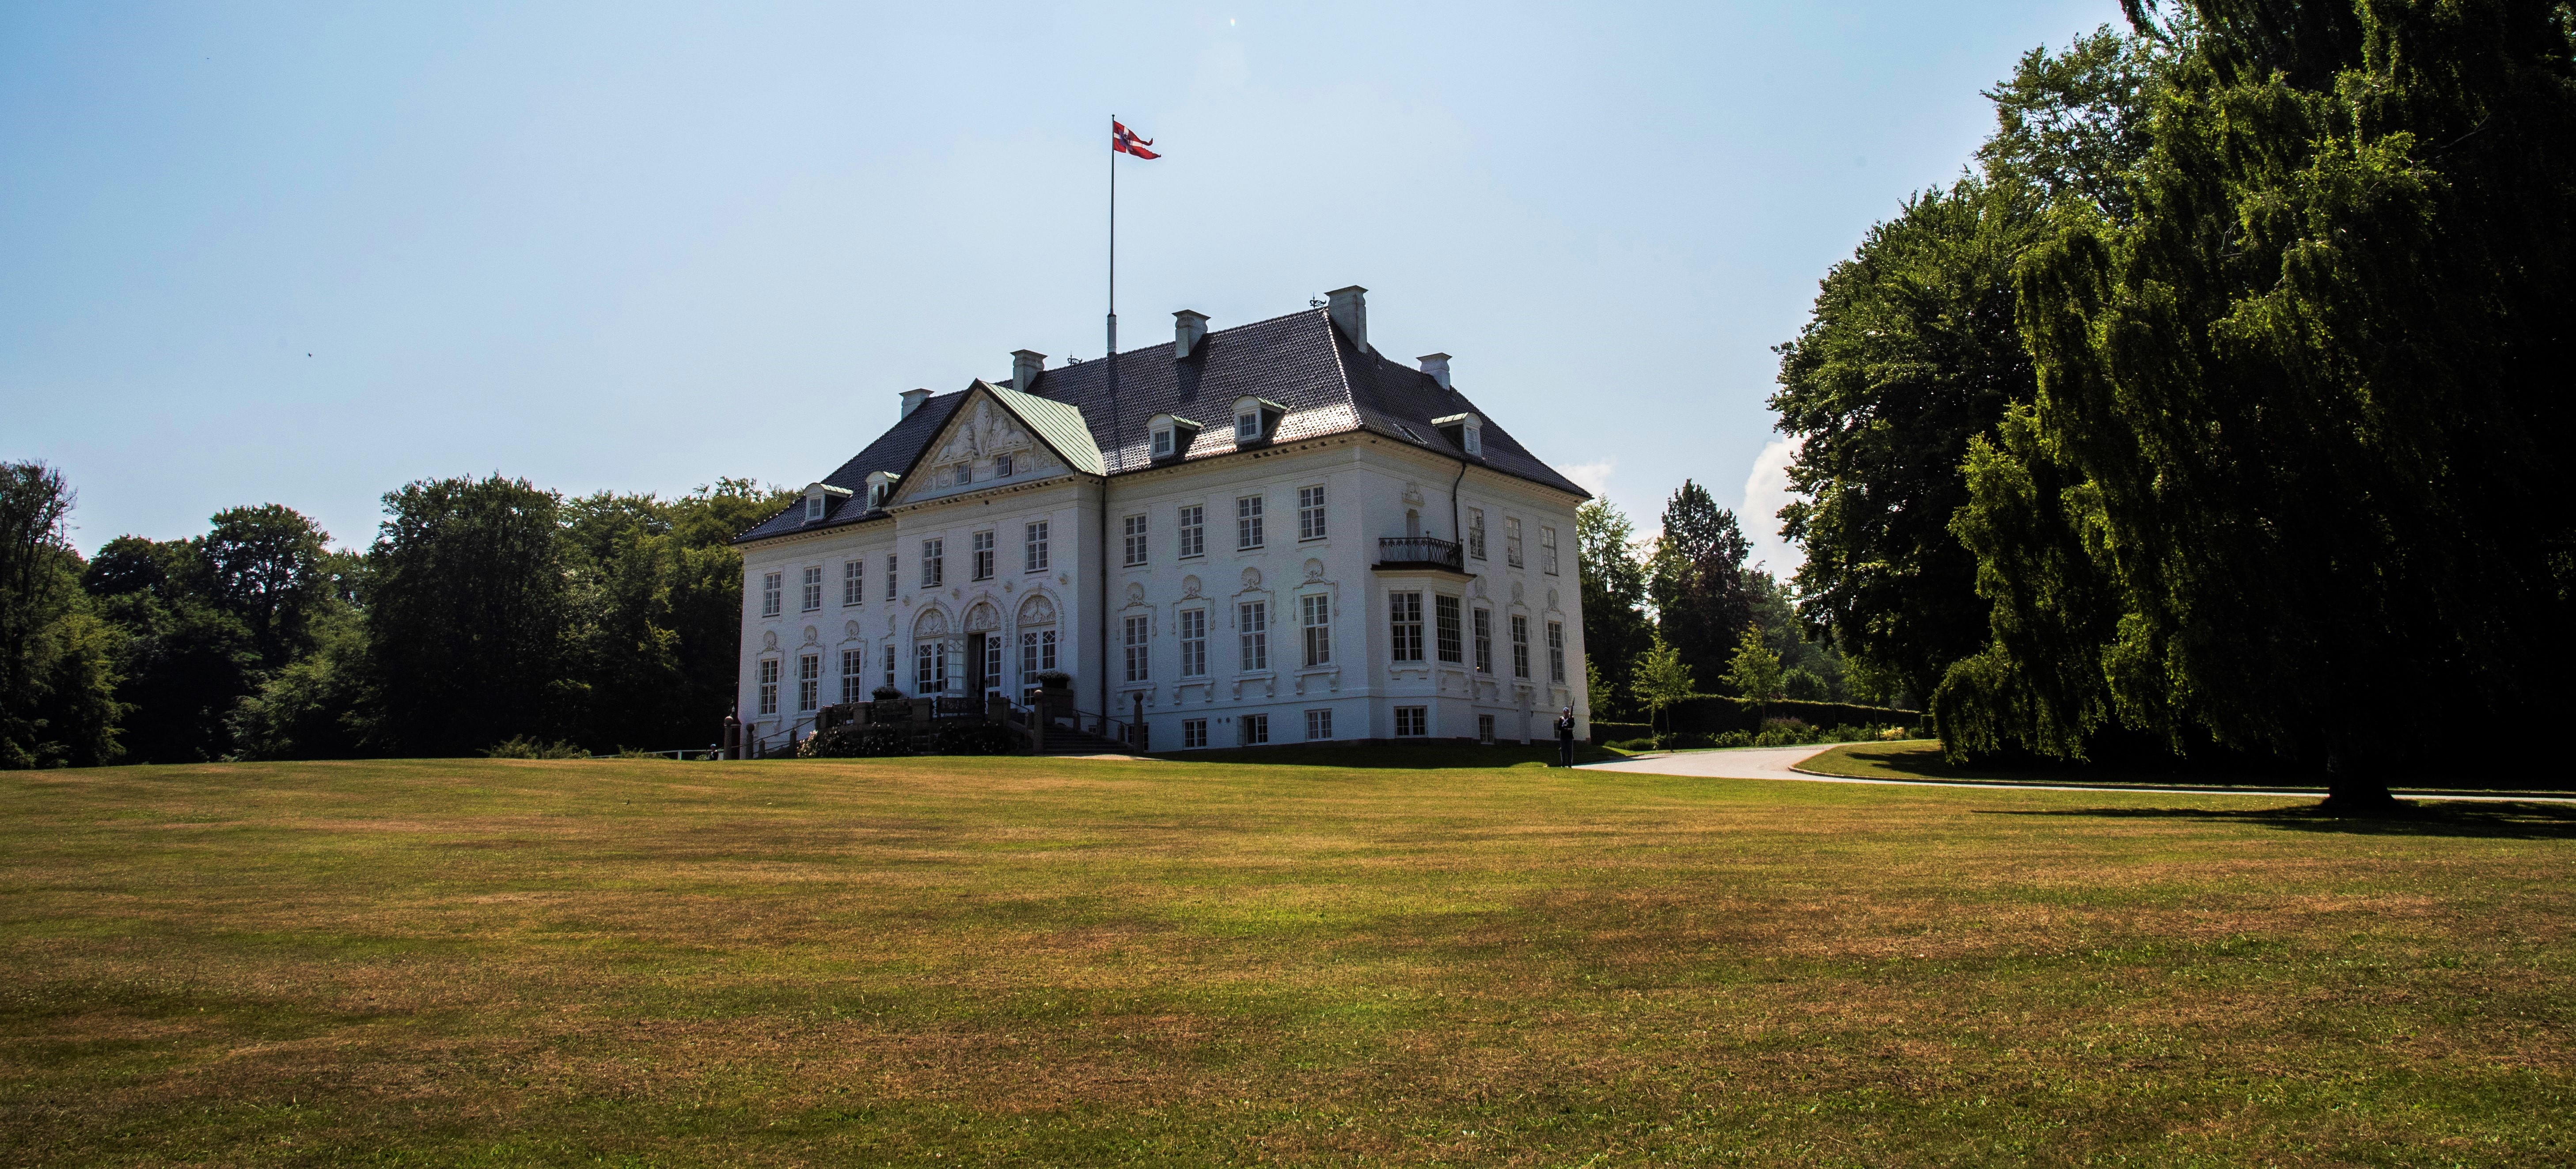 www.kongehuset.dk